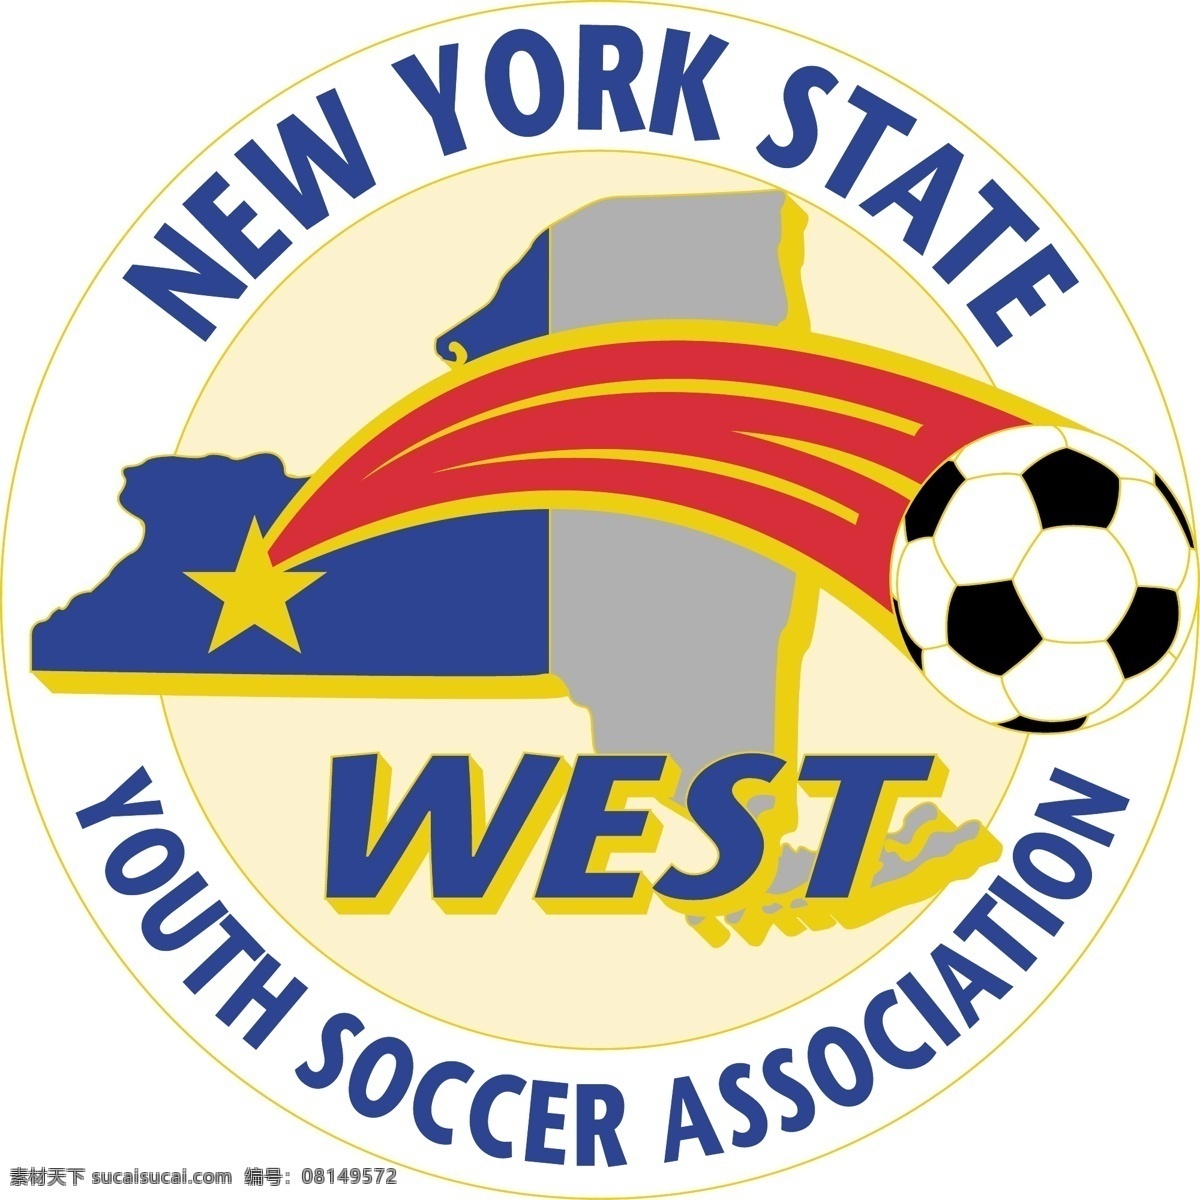 纽约州 西部 青年 足球 协会 自由 标志 西 psd源文件 logo设计